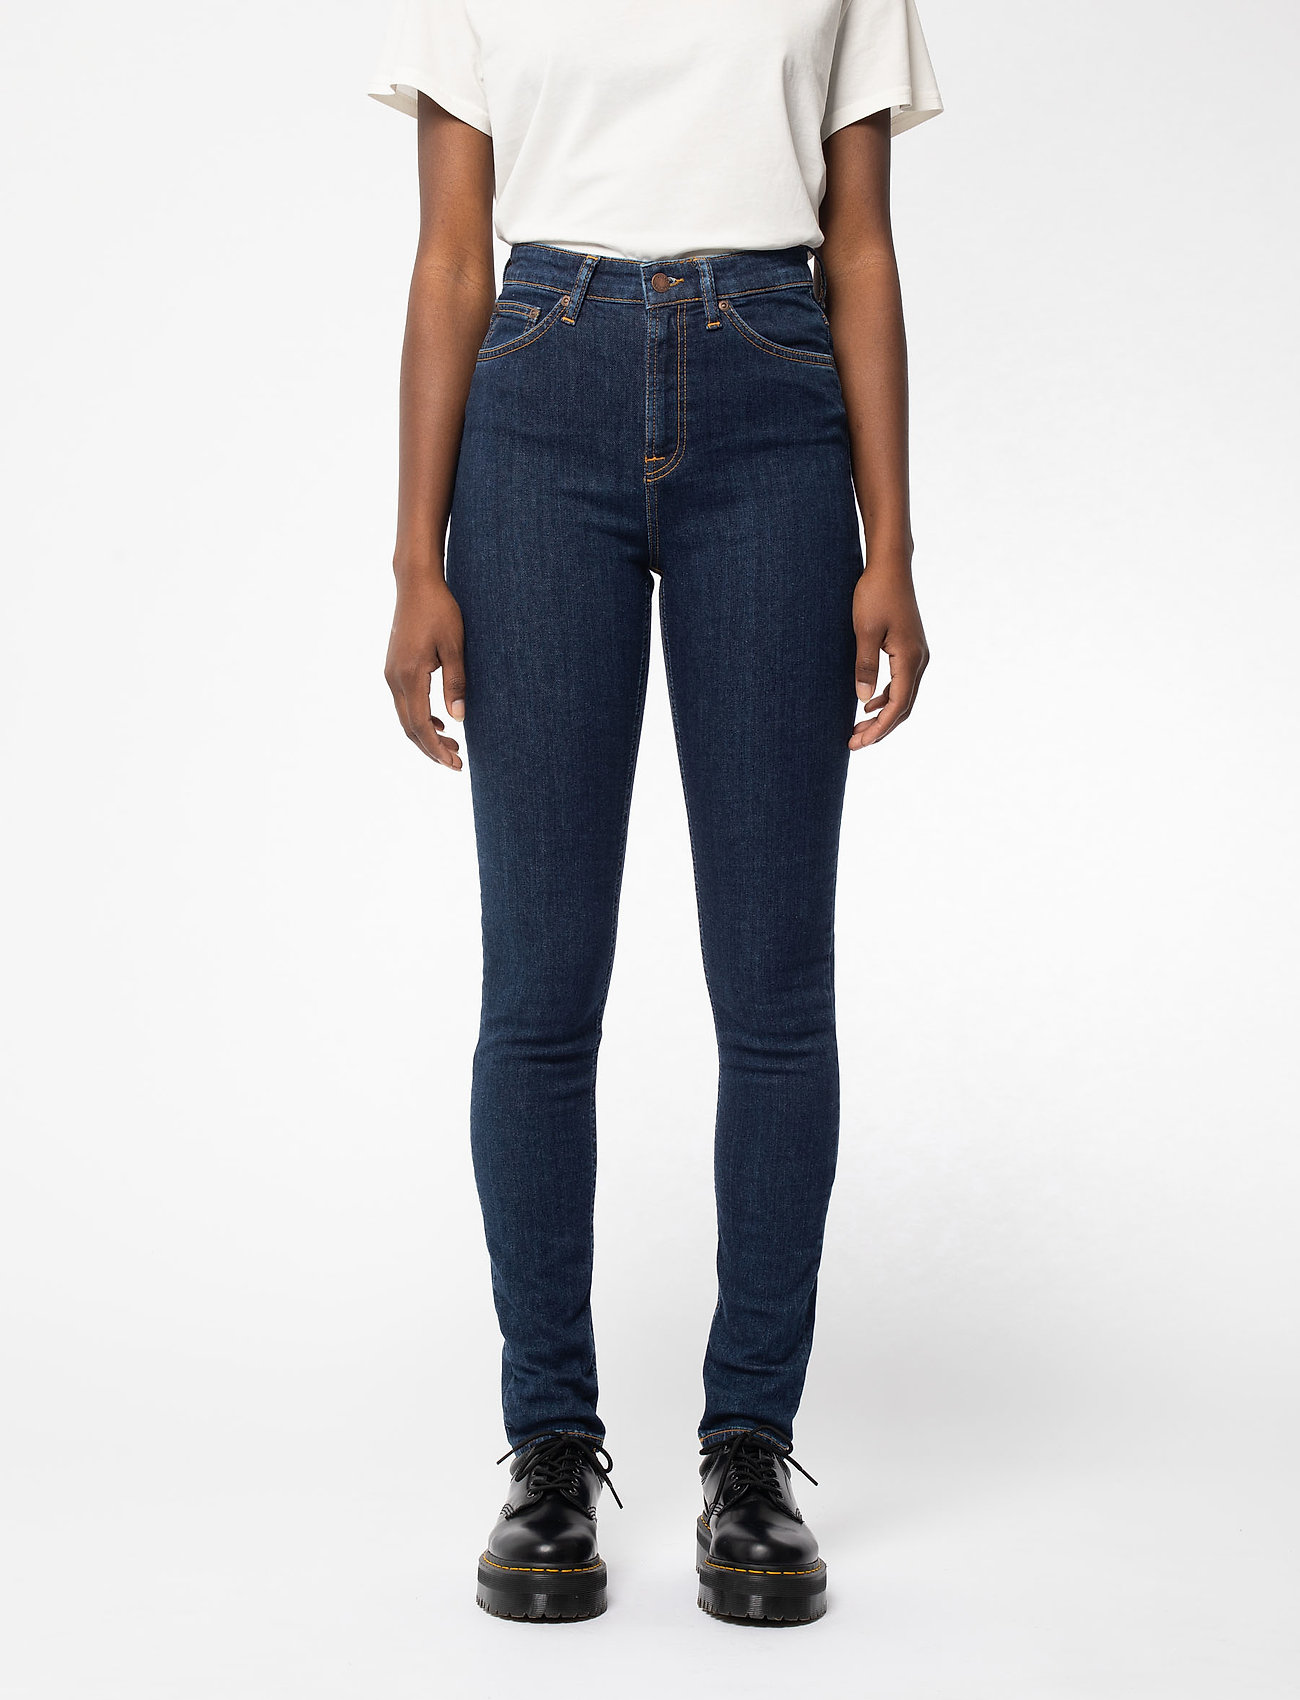 acuut Citaat Is aan het huilen Nudie Jeans Hightop Tilde - Skinny jeans - Boozt.com